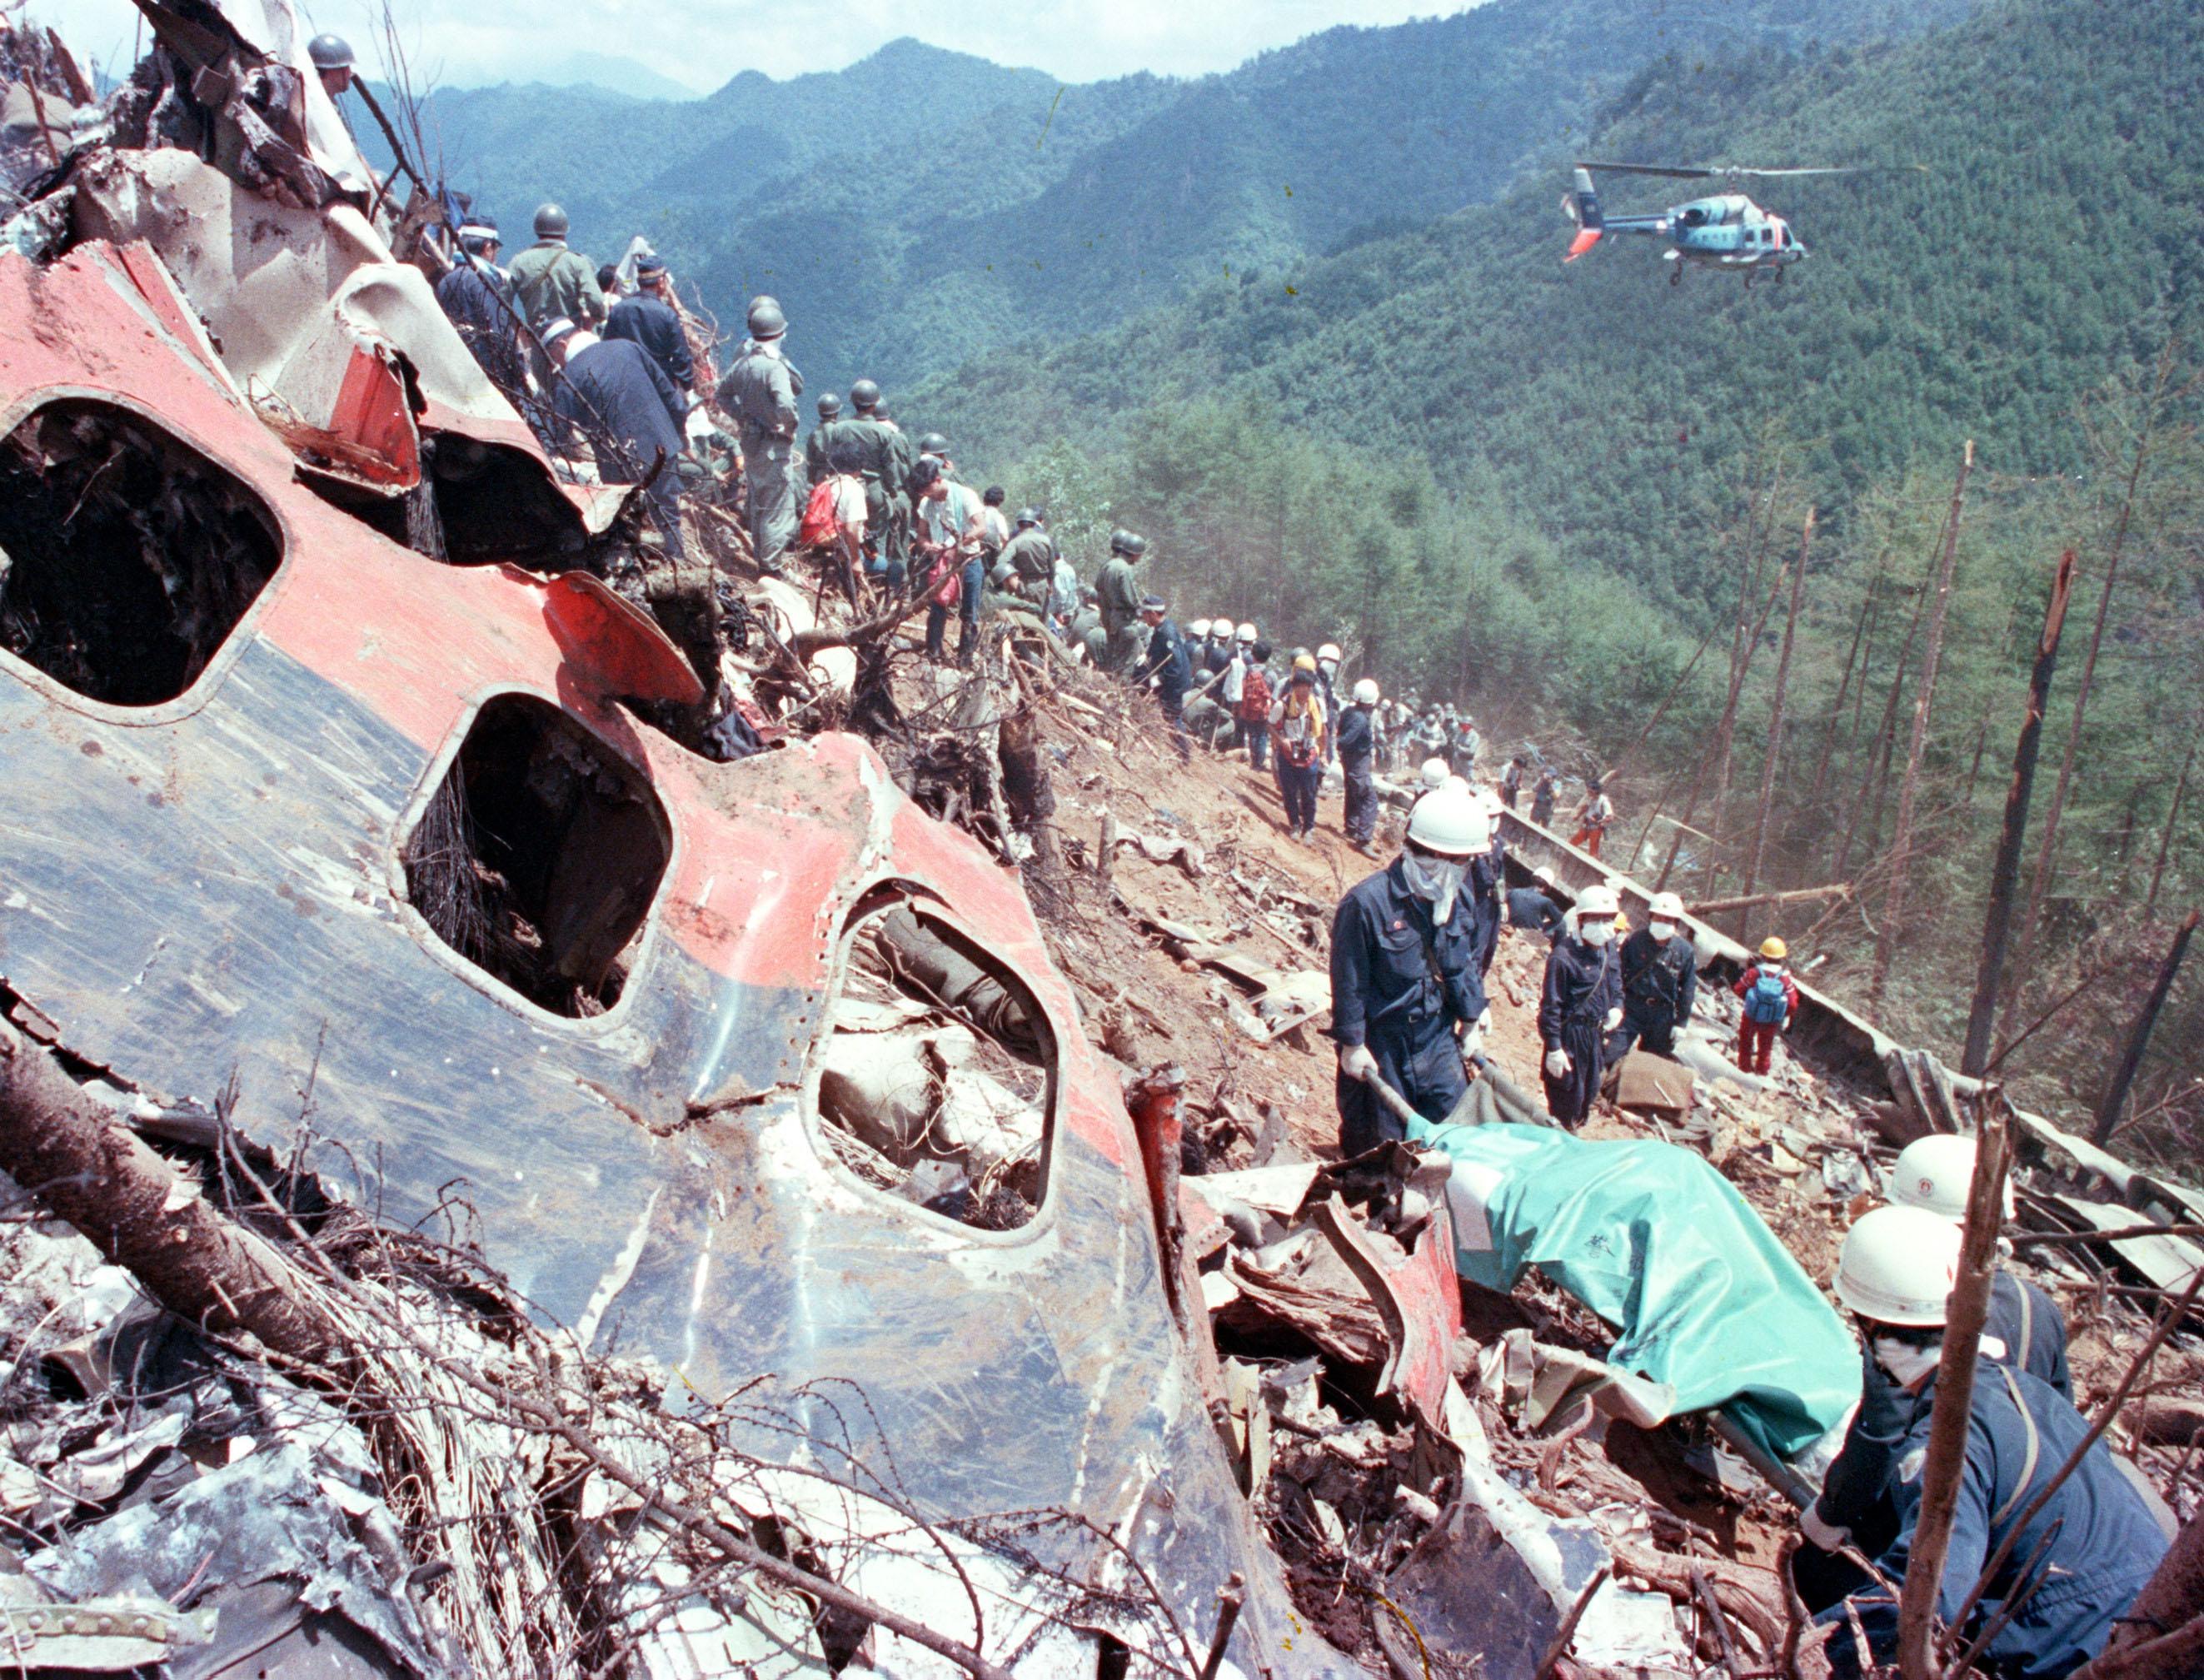 日航 機 墜落 事故 生存 者